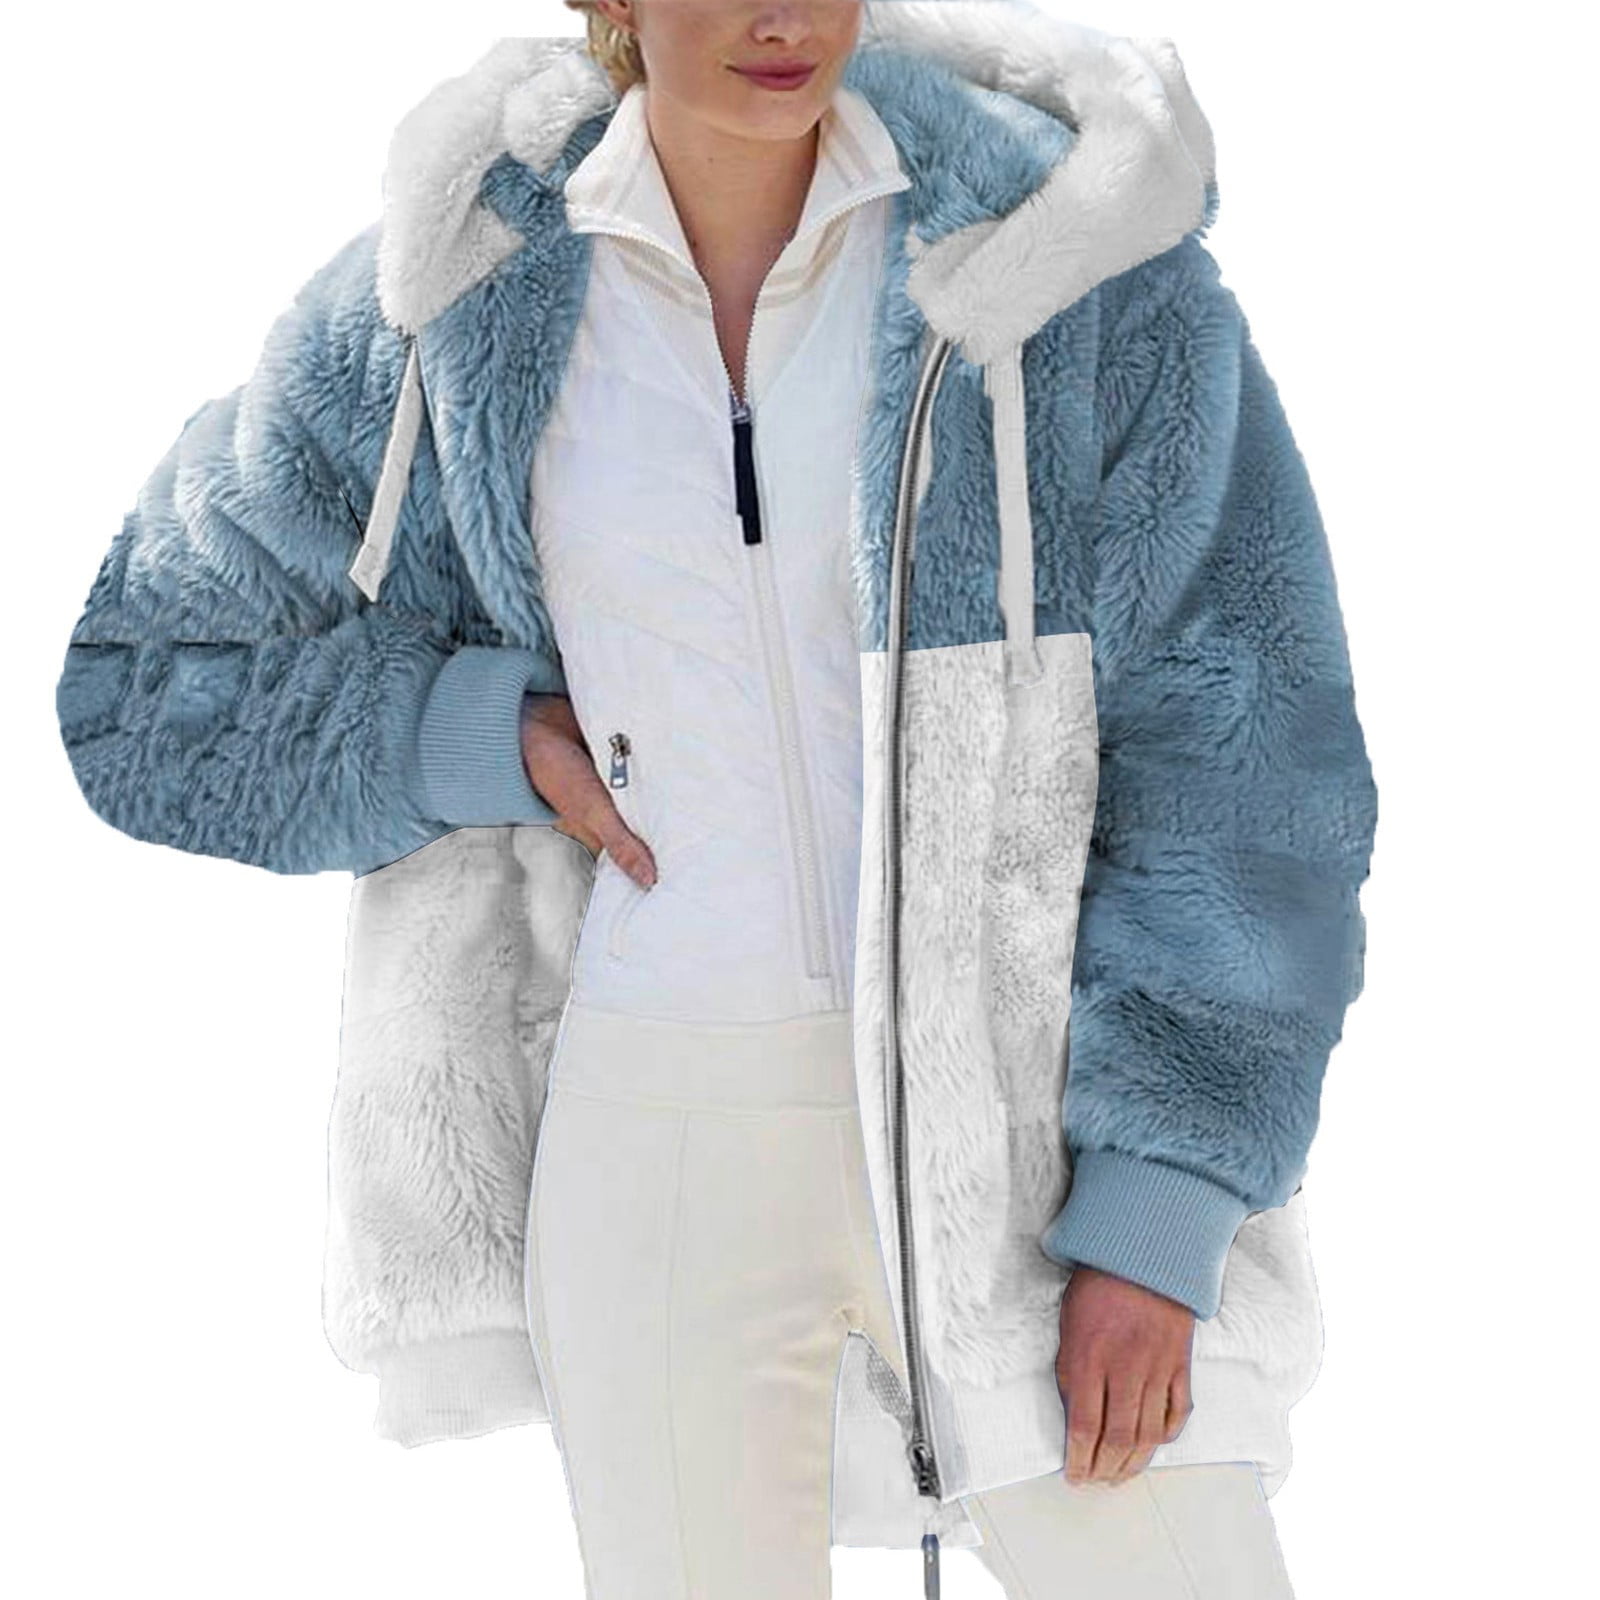 HTNBO Plus Size Winter Coats for Women Casual Outerwear Fleece